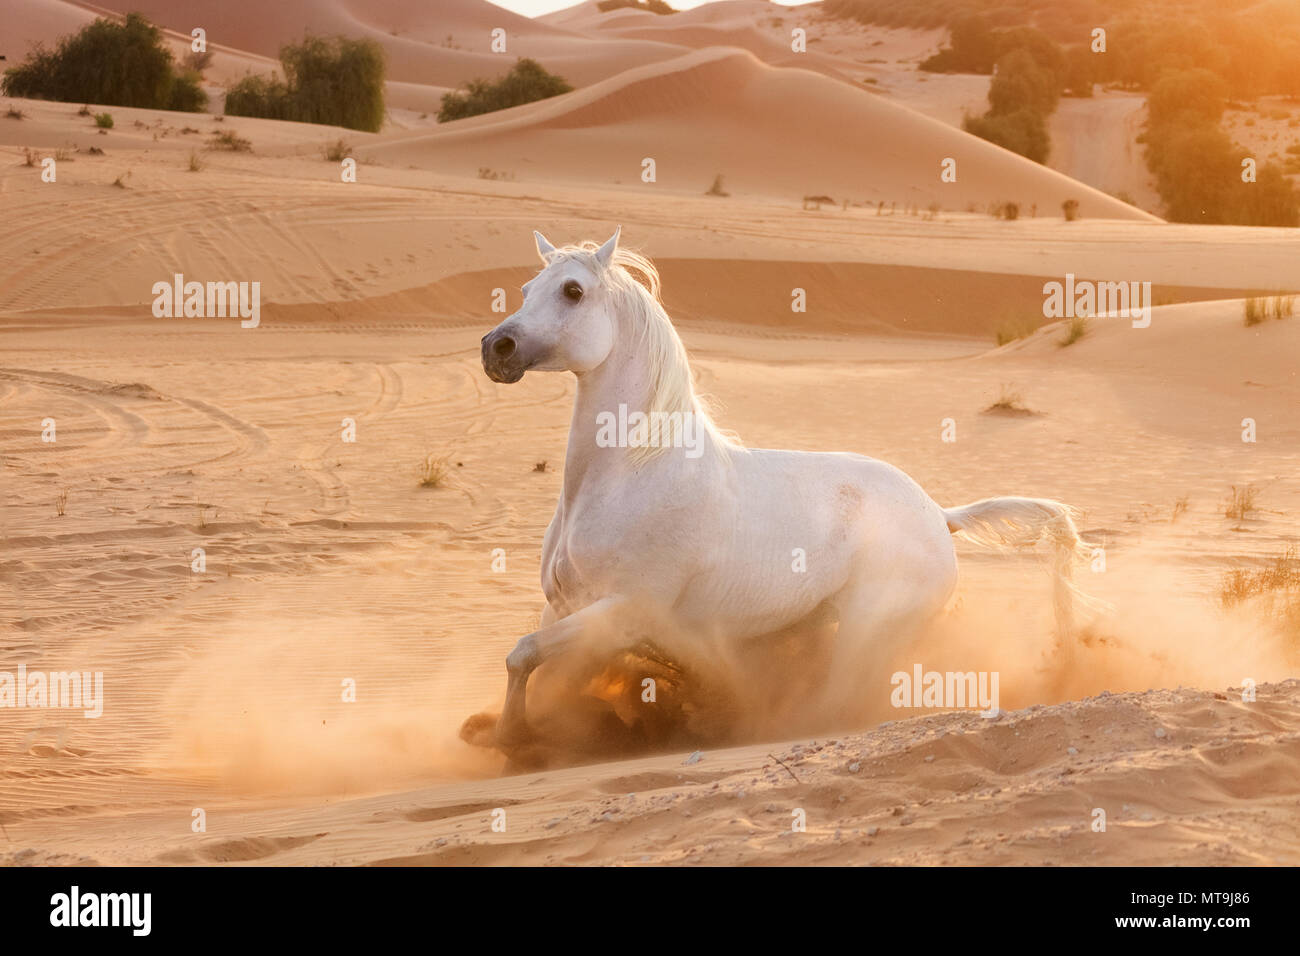 Arabian Horse. Adulto gris parando en el desierto. Abu Dhabi Foto de stock